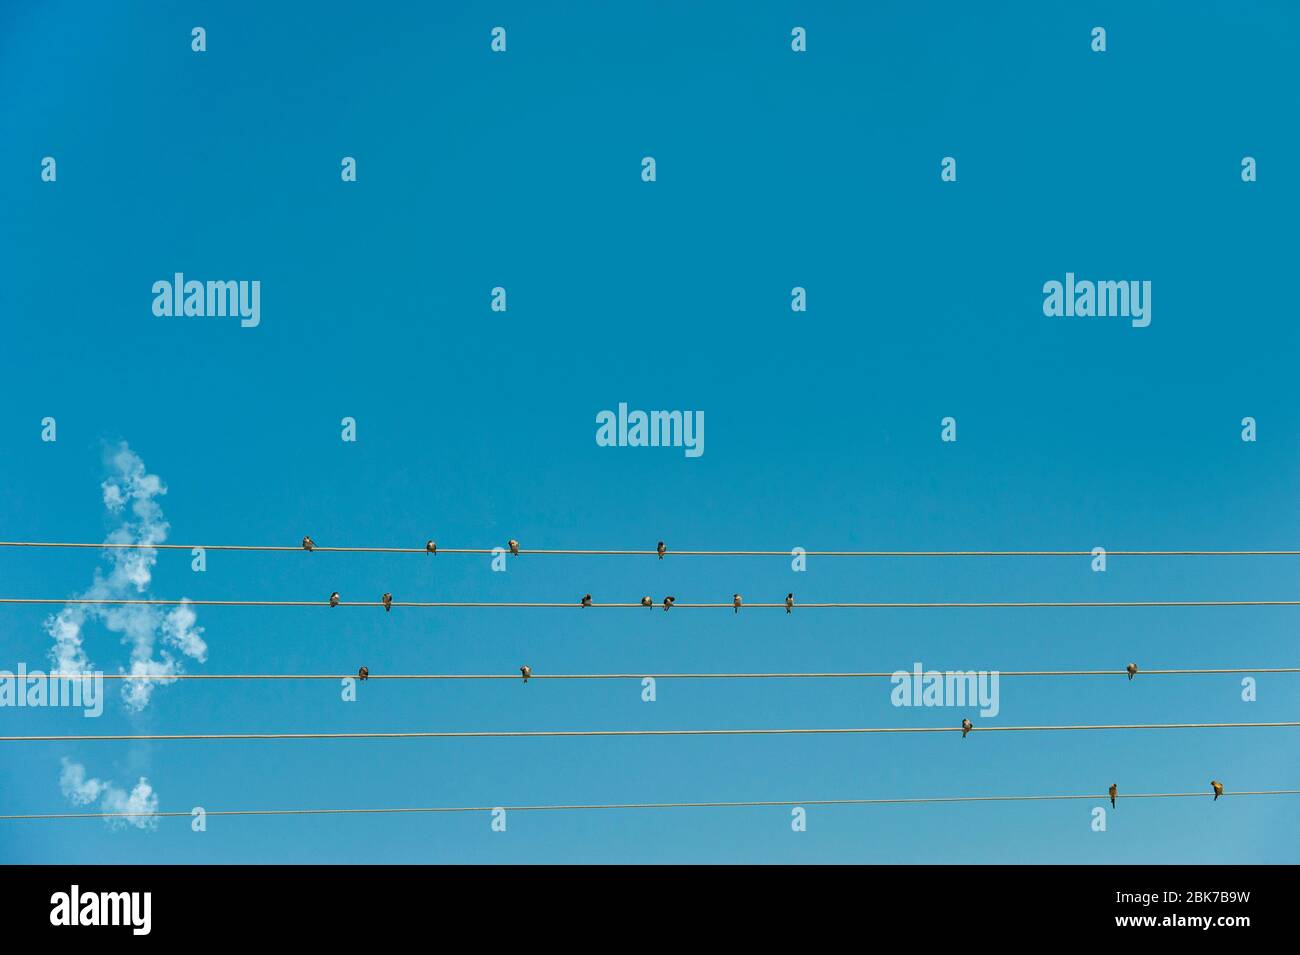 Une image conceptuelle de la musique, faite par swwulds sur des fils télégraphiques et une bande d'aigus faite de nuages Banque D'Images